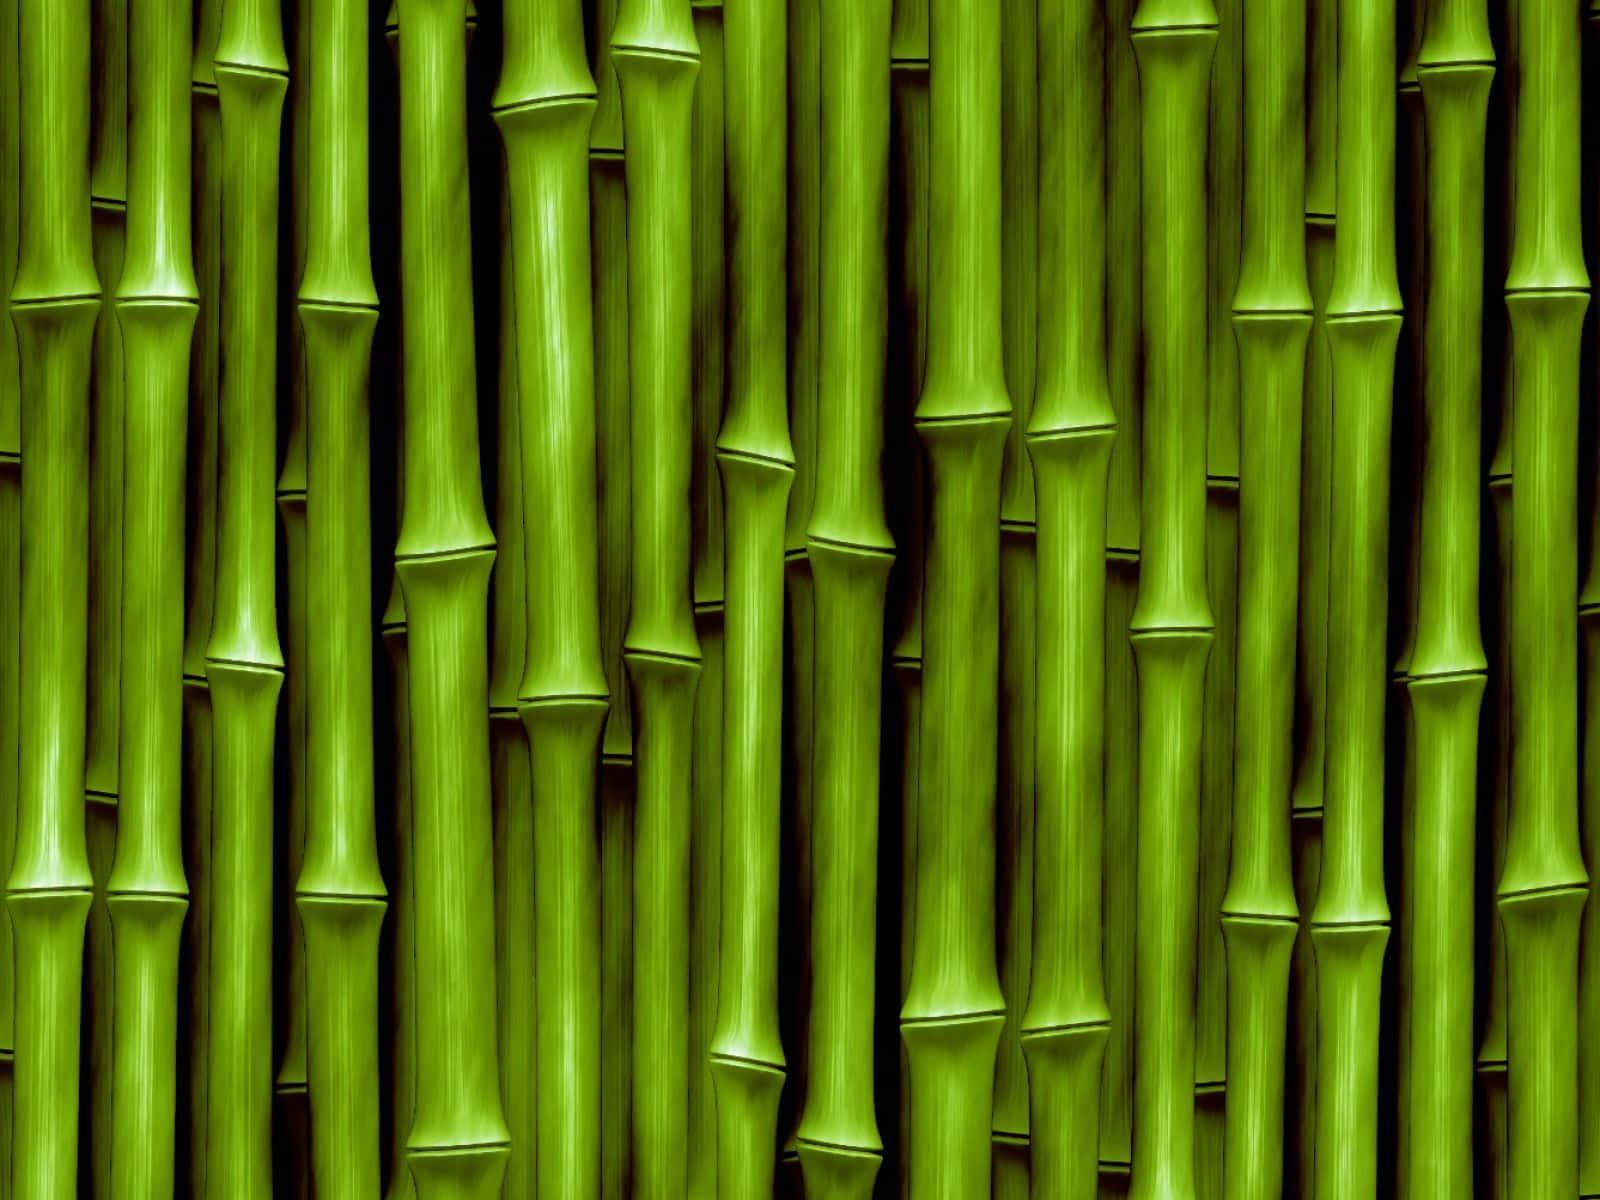 Sfondocon Steli Di Bambù - Stampa D'arte Di Sfondo Con Steli Di Bambù